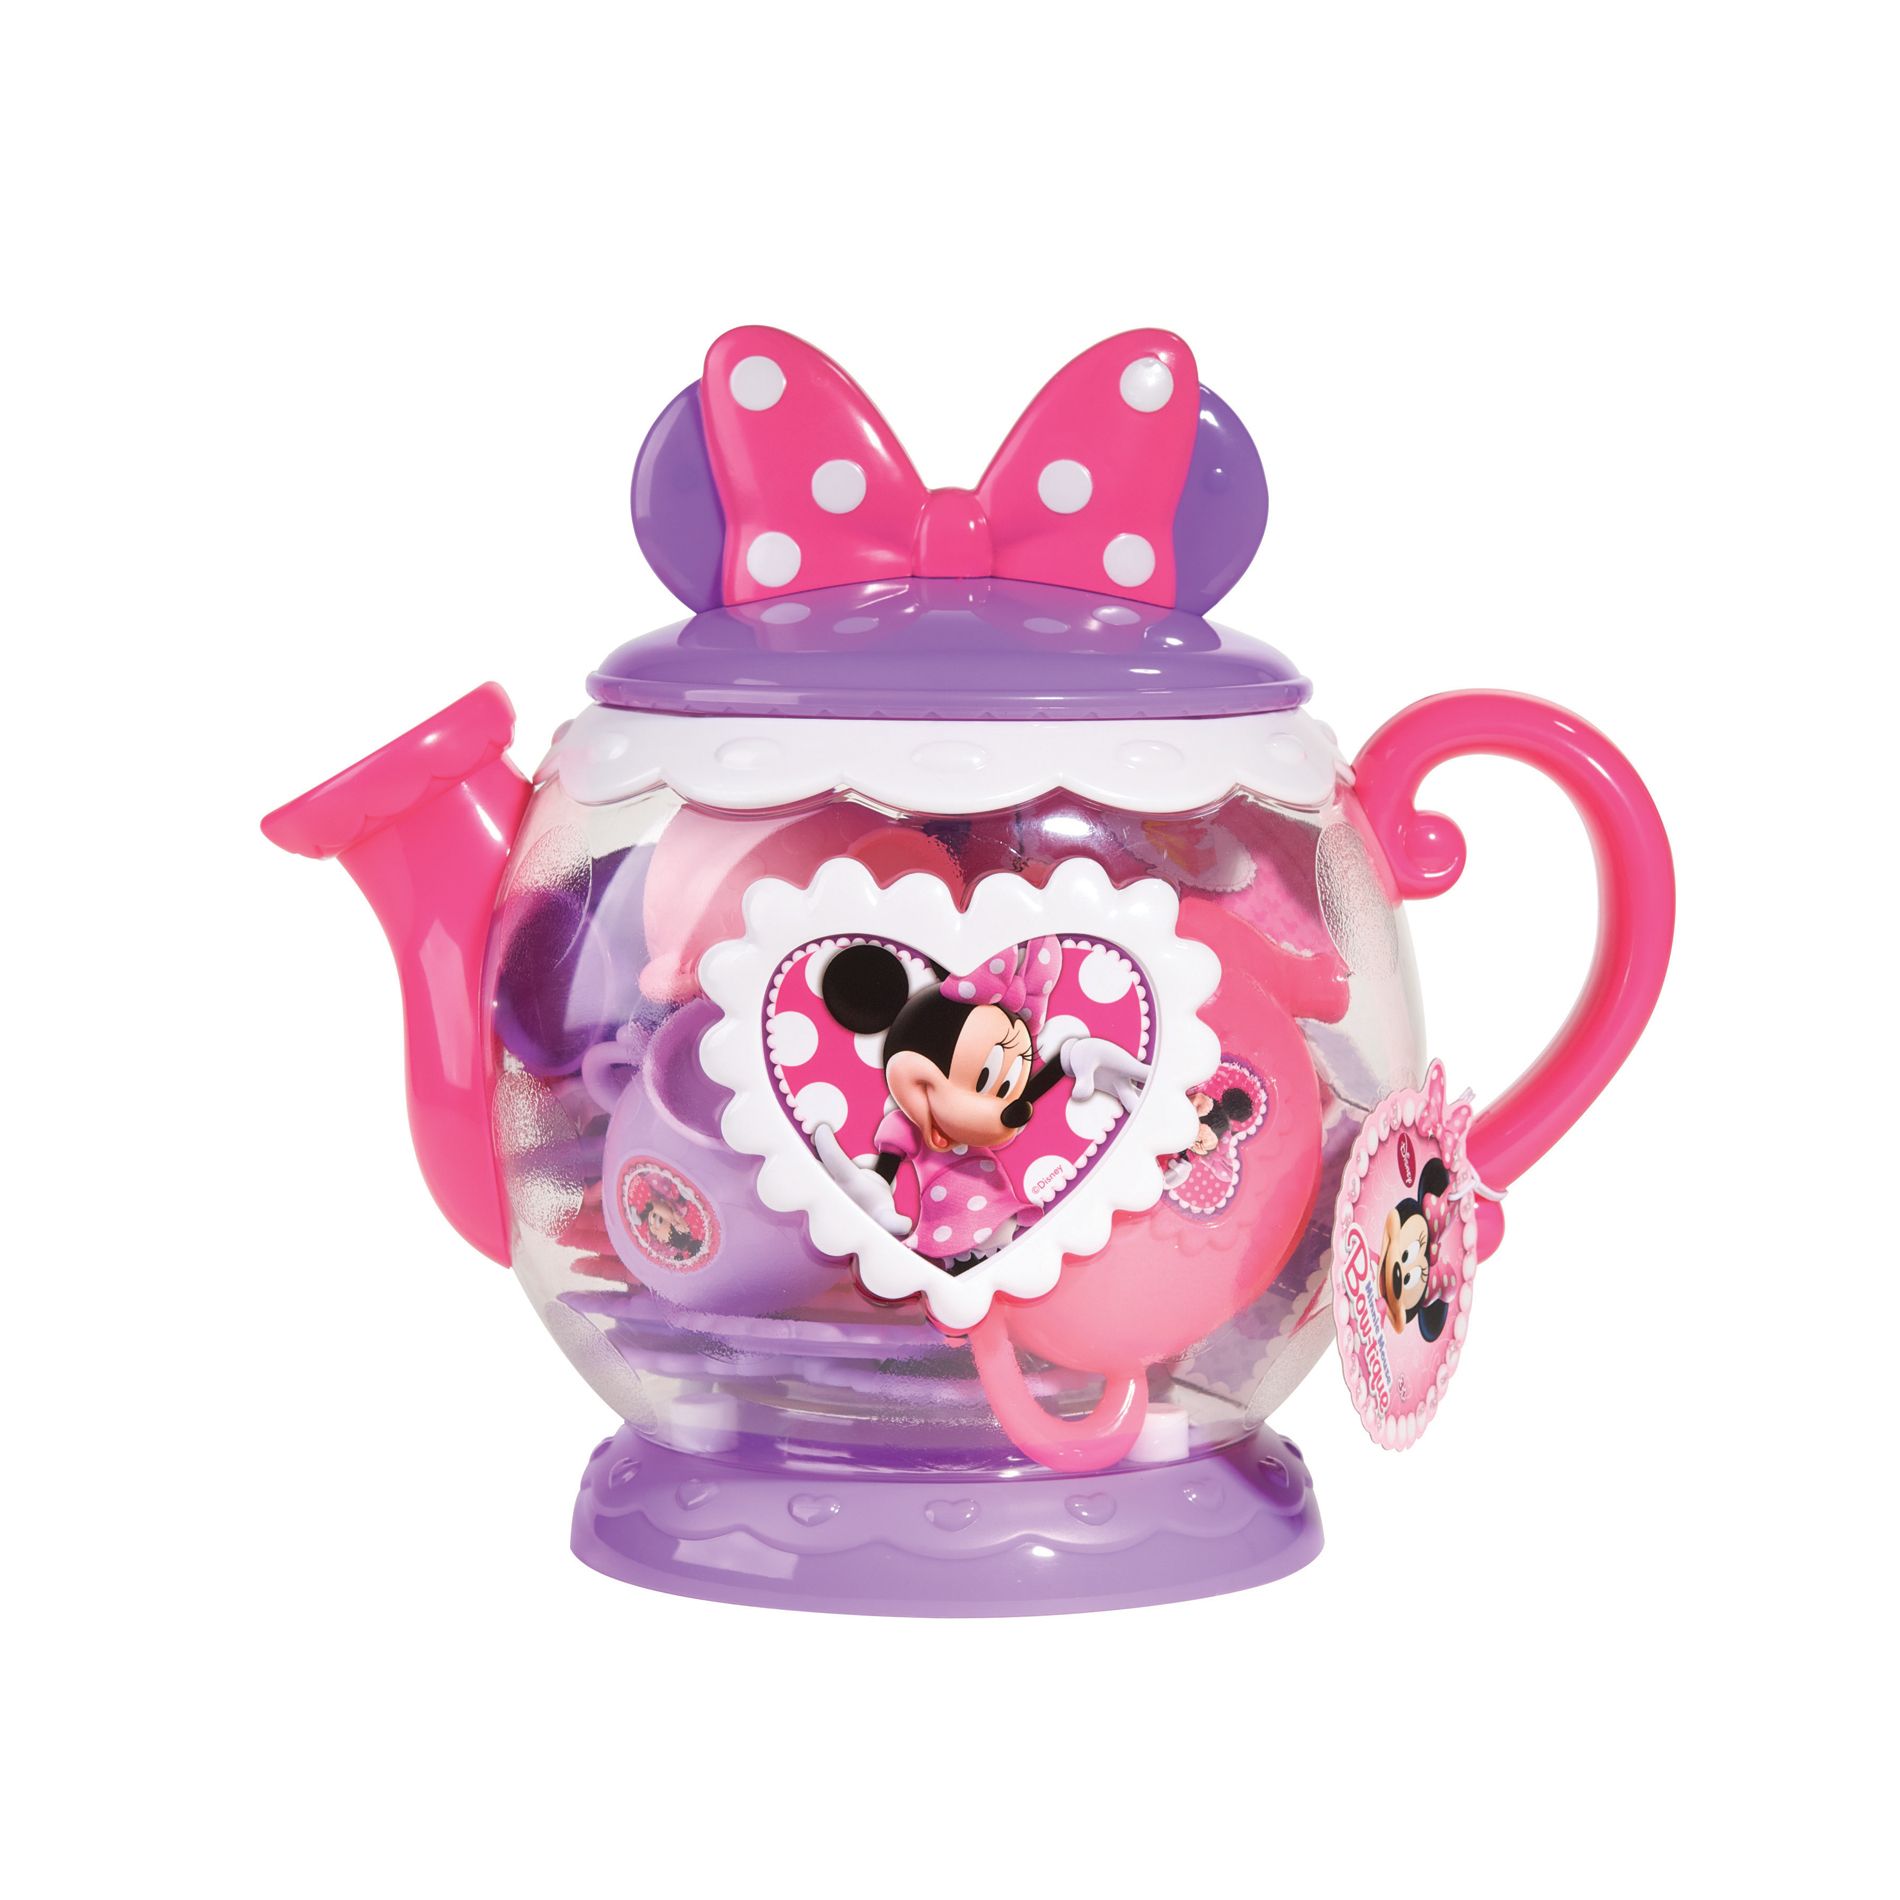 Disney Teapot Play Set Minnie Mouse Bowtique Lavender